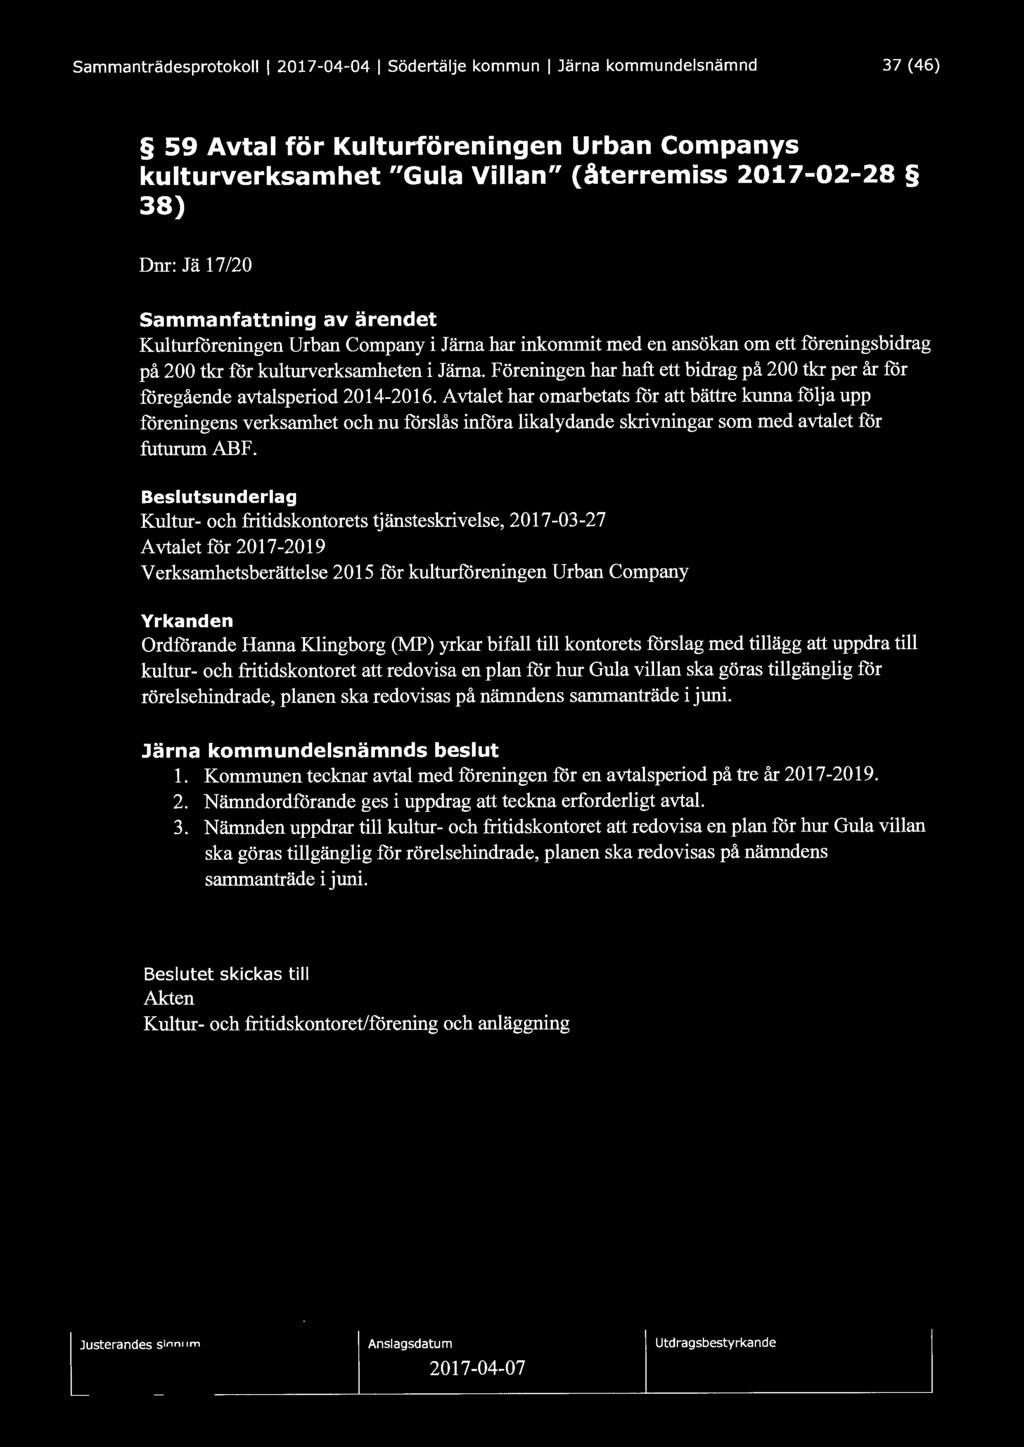 Sammanträdesprotokoll l 2017-04-04 l Södertälje kommun l Järna kommundelsnämnd 37 (46) 59 Avtal för Kulturföreningen Urban Companys kulturverksamhet "Gula Villan" (återremiss 2017-02-28 38) Dnr: J ä